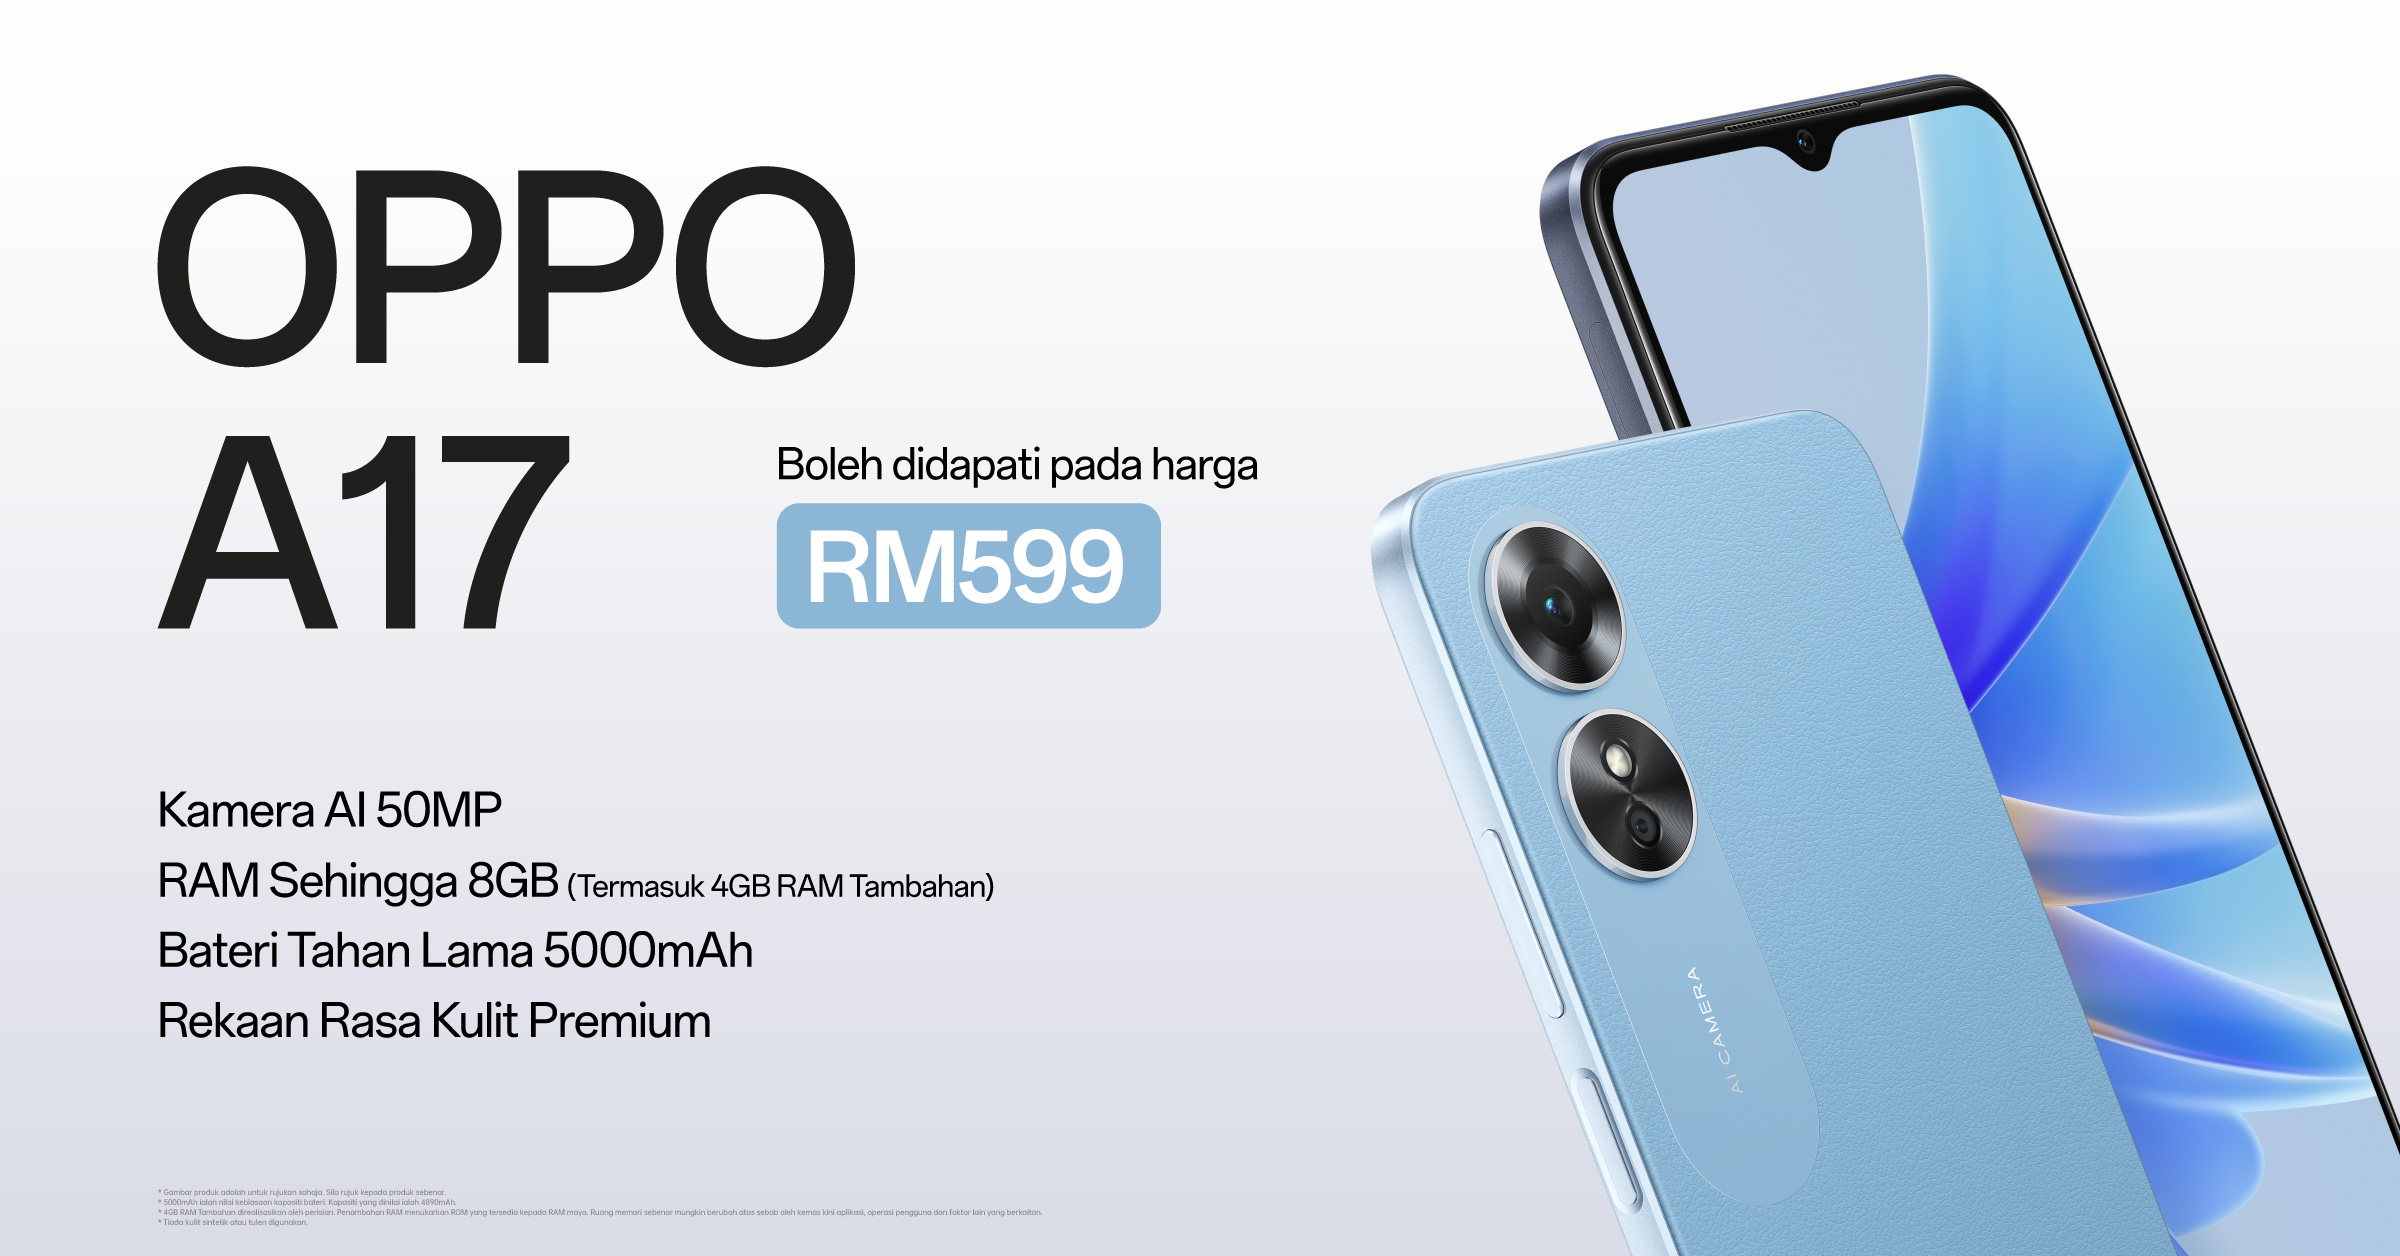 OPPO A17 kini rasmi di Malaysia pada harga RM 599 sahaja 11